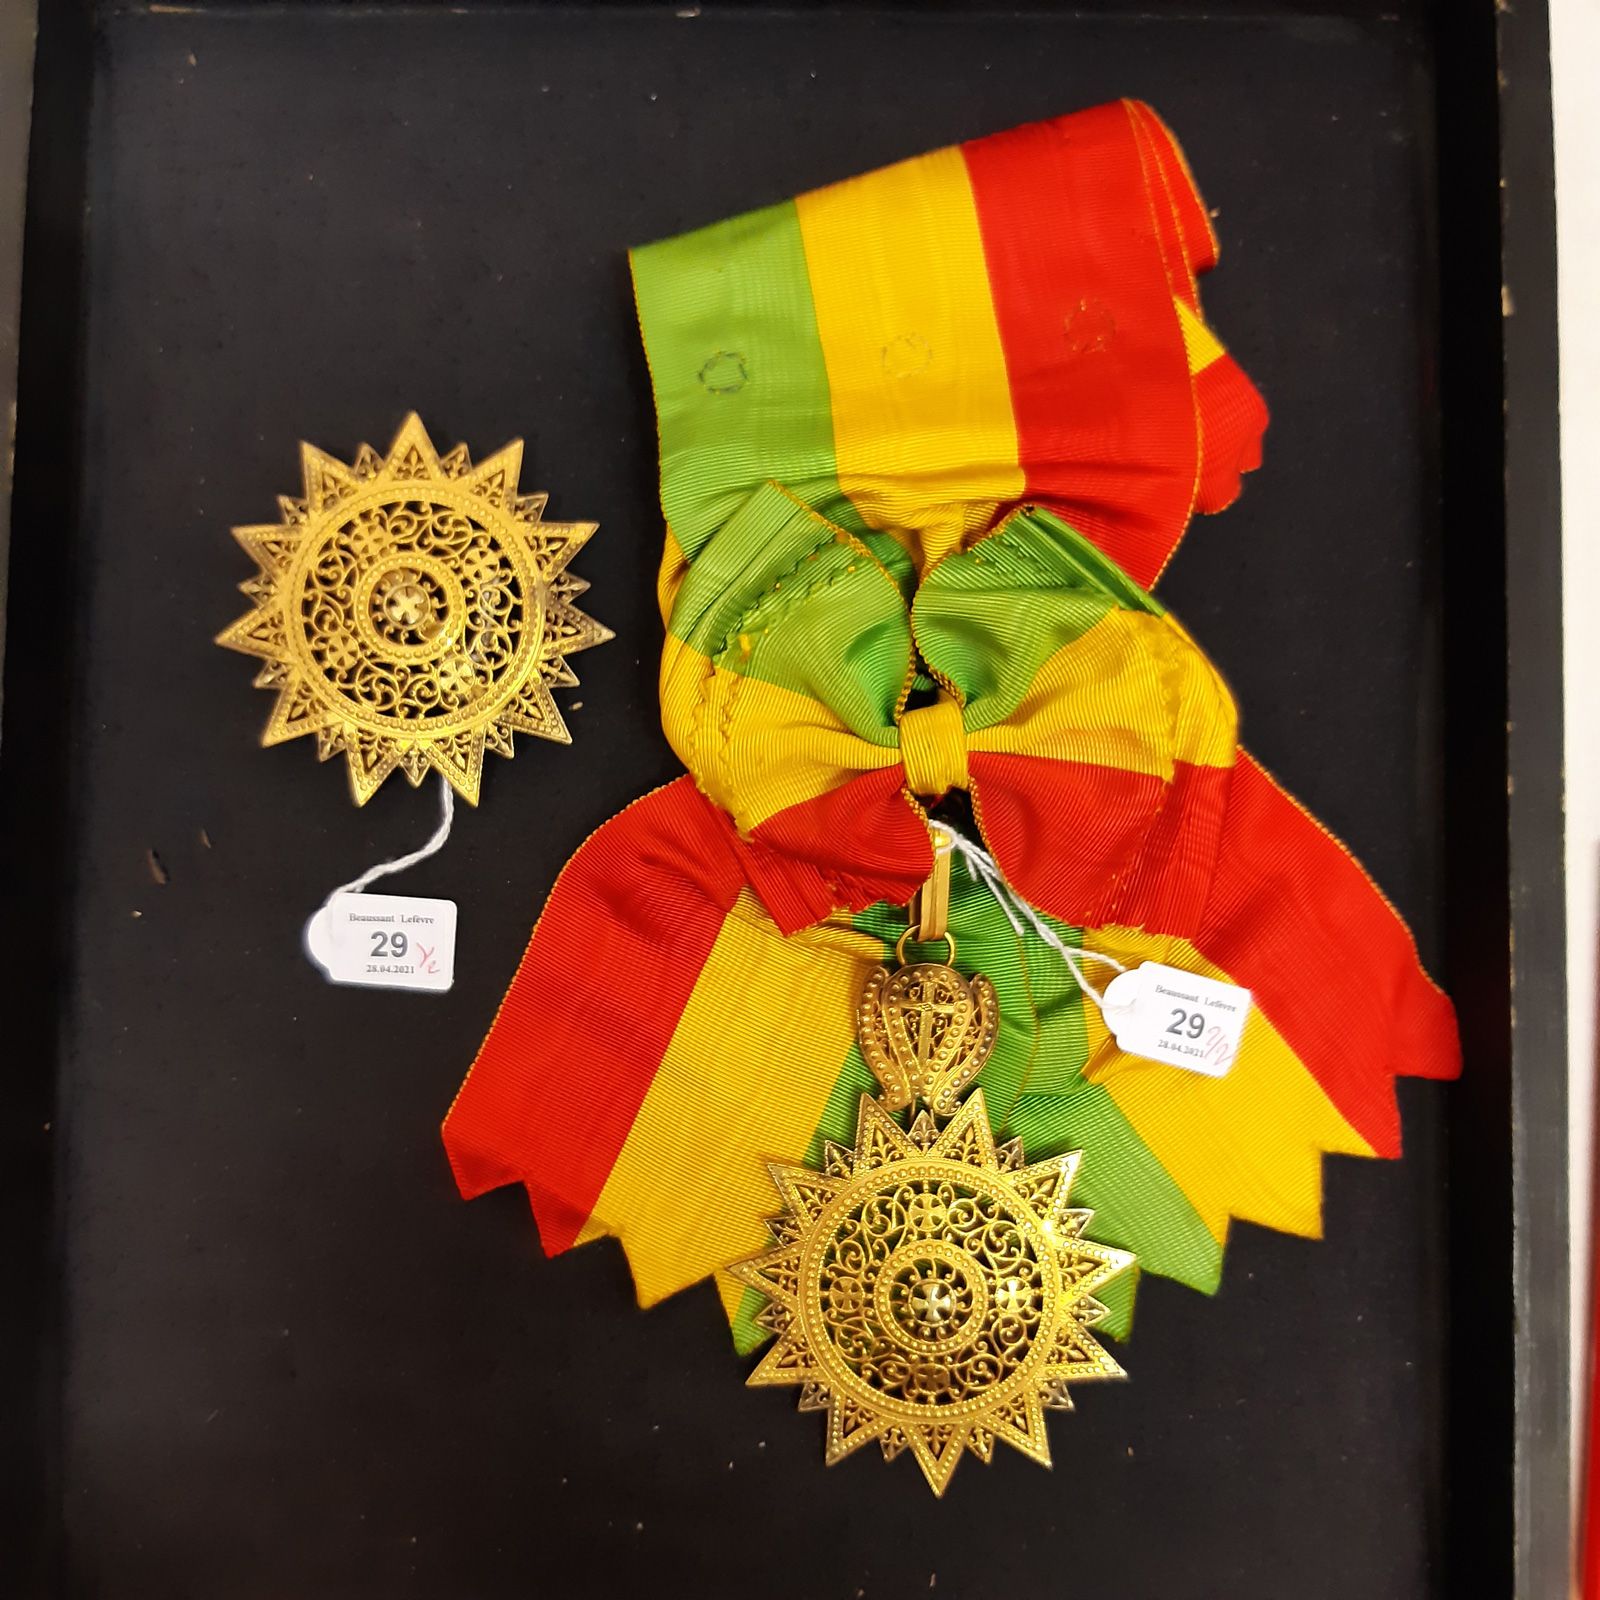 Null 埃塞俄比亚 - 埃塞俄比亚之星勋章，1879年由梅内利克二世的昭和国王创立，1889年并入埃塞俄比亚勋章，一套大十字勋章包括镀金青铜的珠宝和牌匾，由一&hellip;